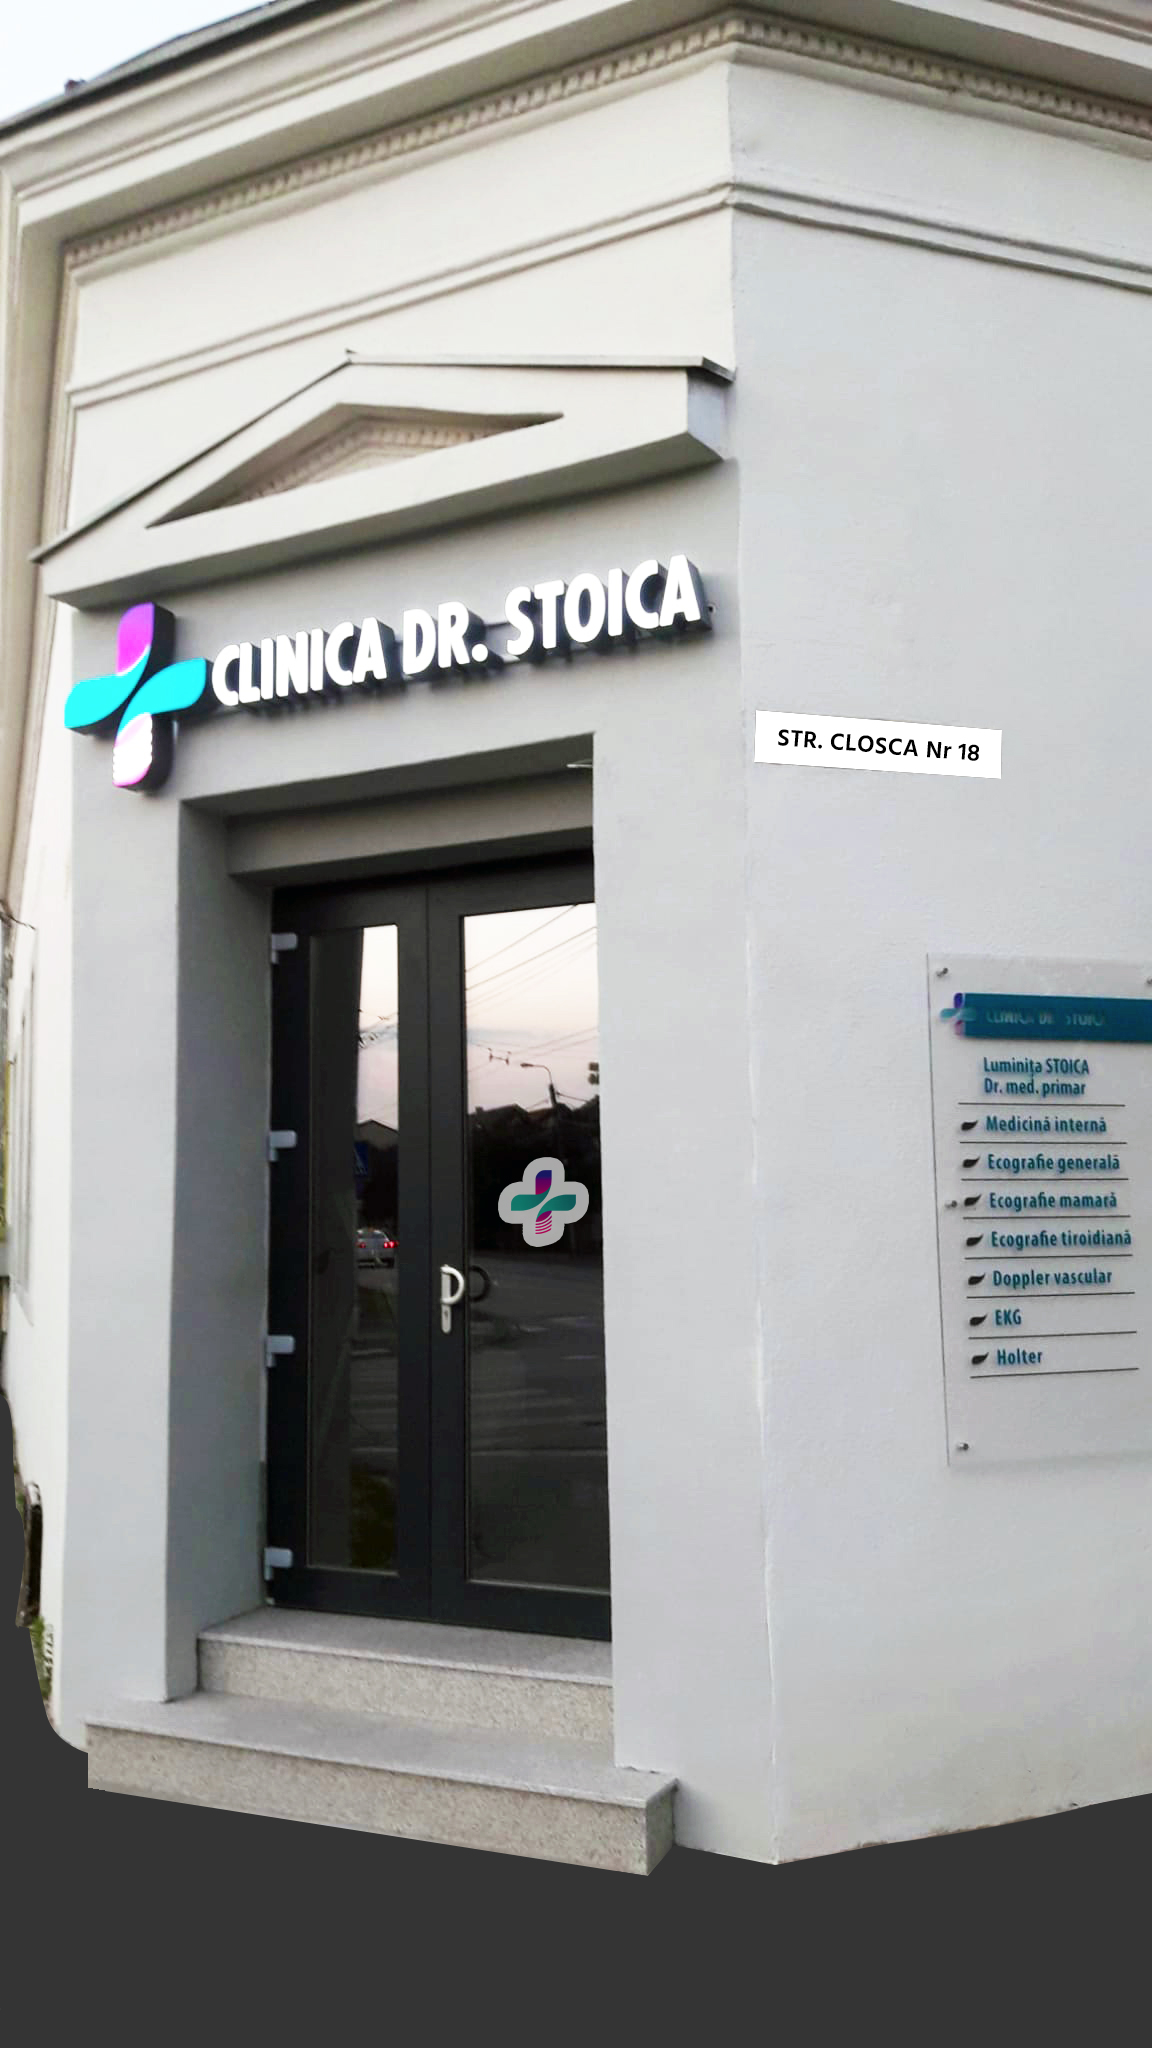 Clinica Dr. Stoica - Str. Closca Nr. 18, Timisoara